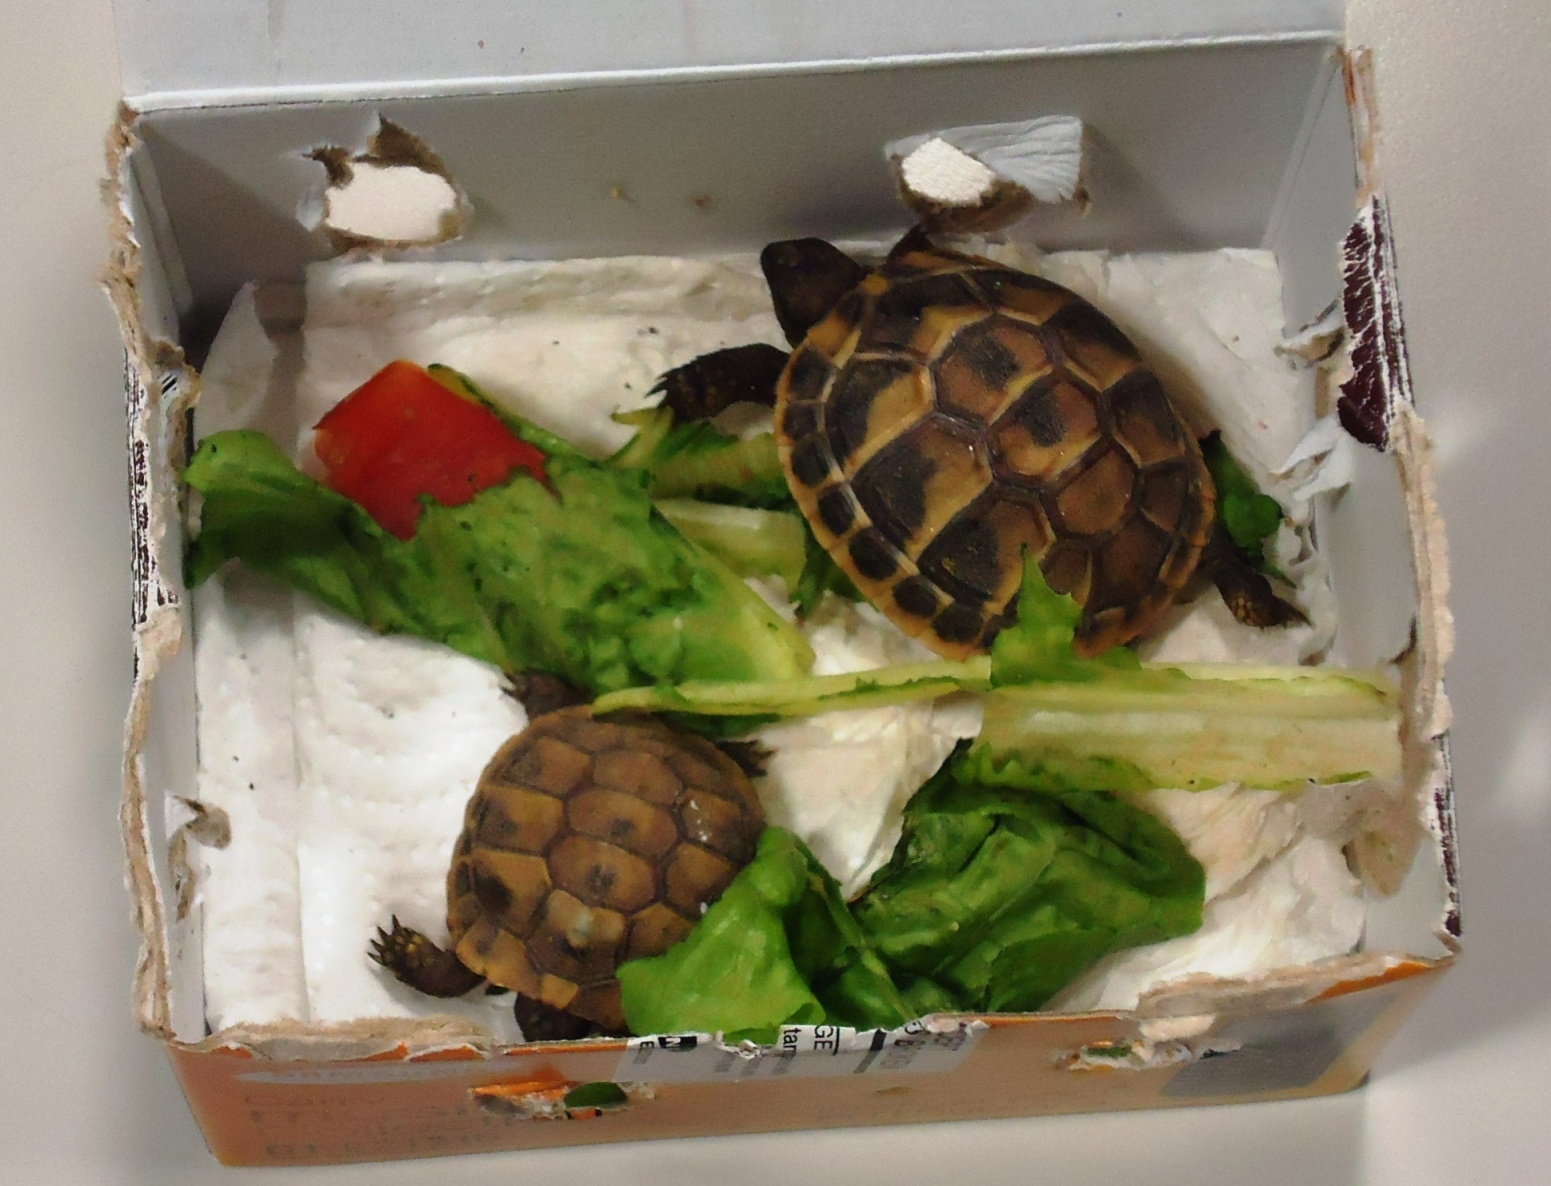 Nicht alltäglicher Fund: 52 Schildkröte wurden letztes Jahr in einem Lieferwagen entdeckt. Der Schmuggler hatte noch 500 mehr Zuhause.